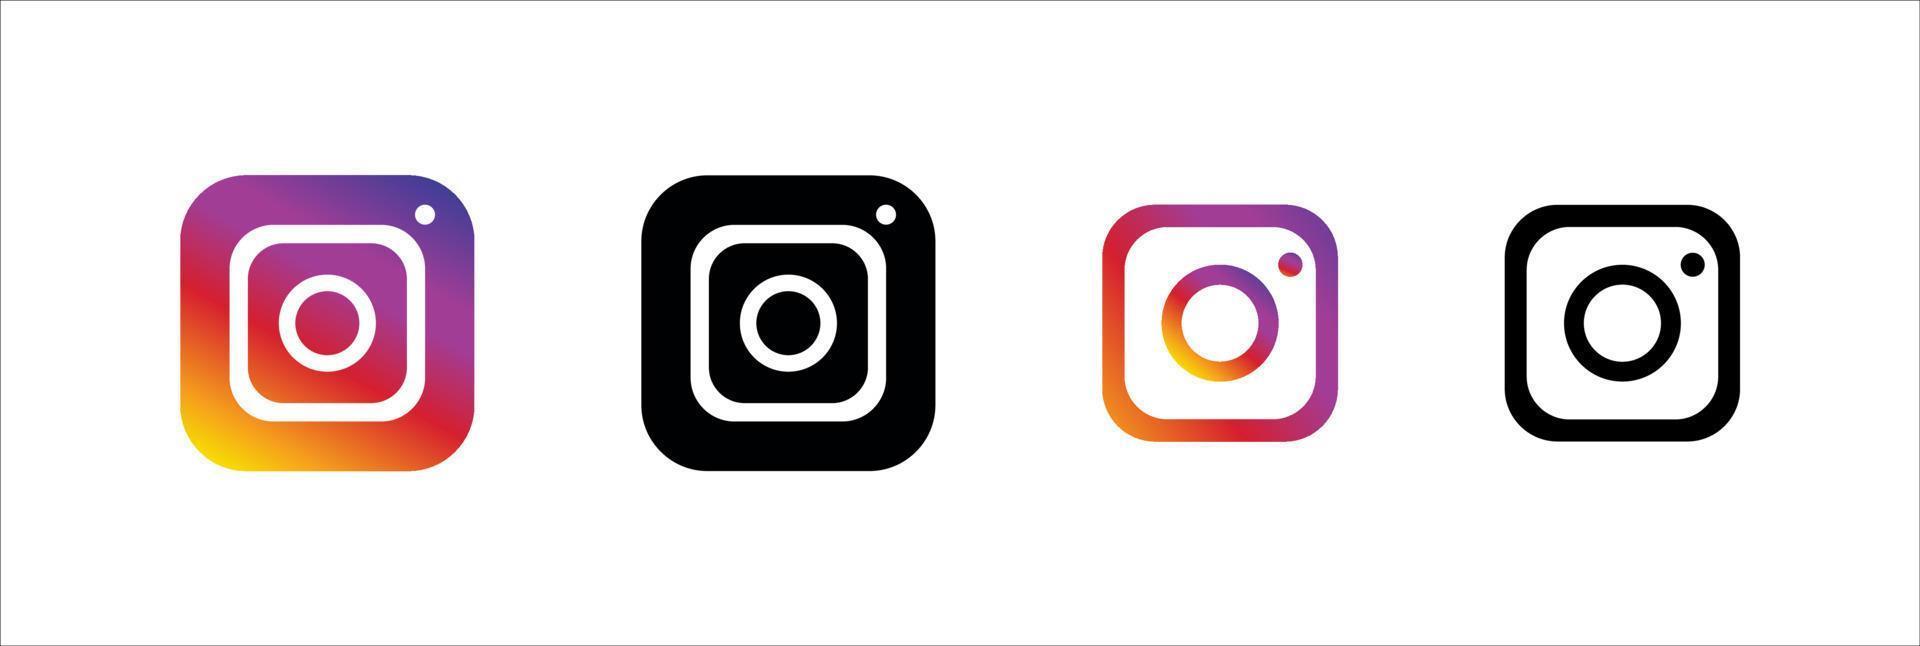 conjunto de iconos de logotipo de redes sociales de instagram vector